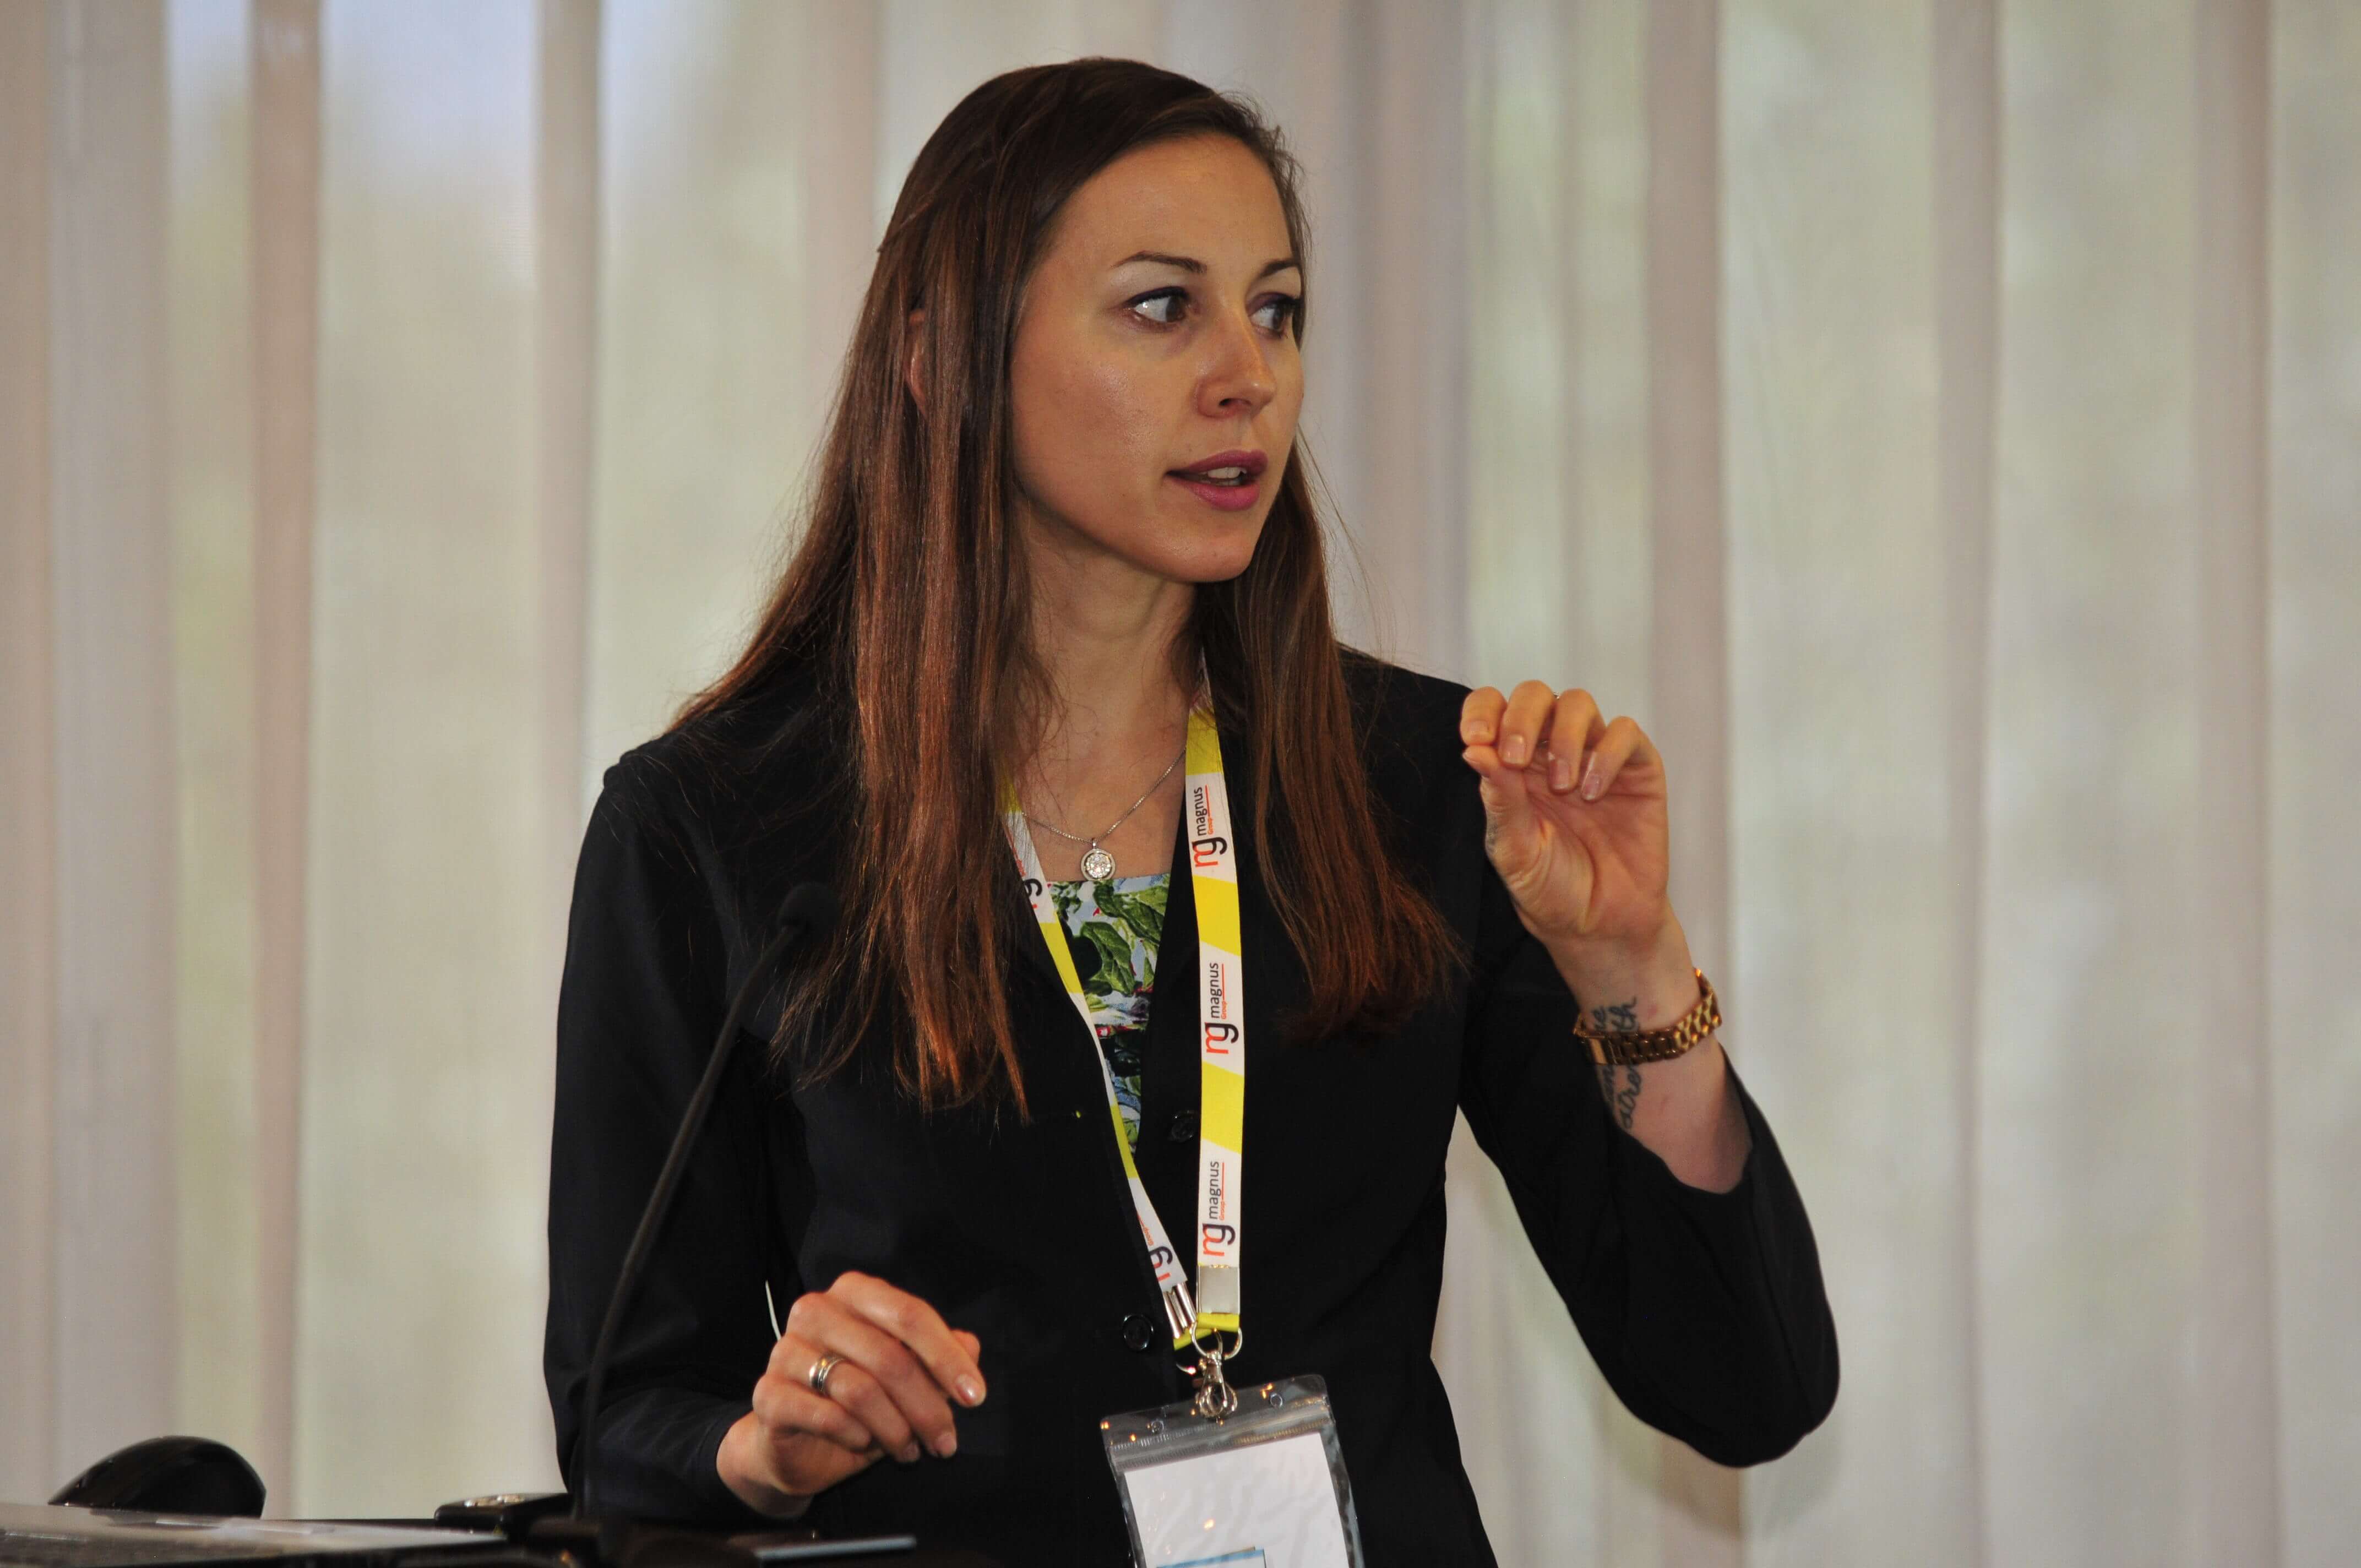 Speaker for Pharma 2020-Kira Astakhova